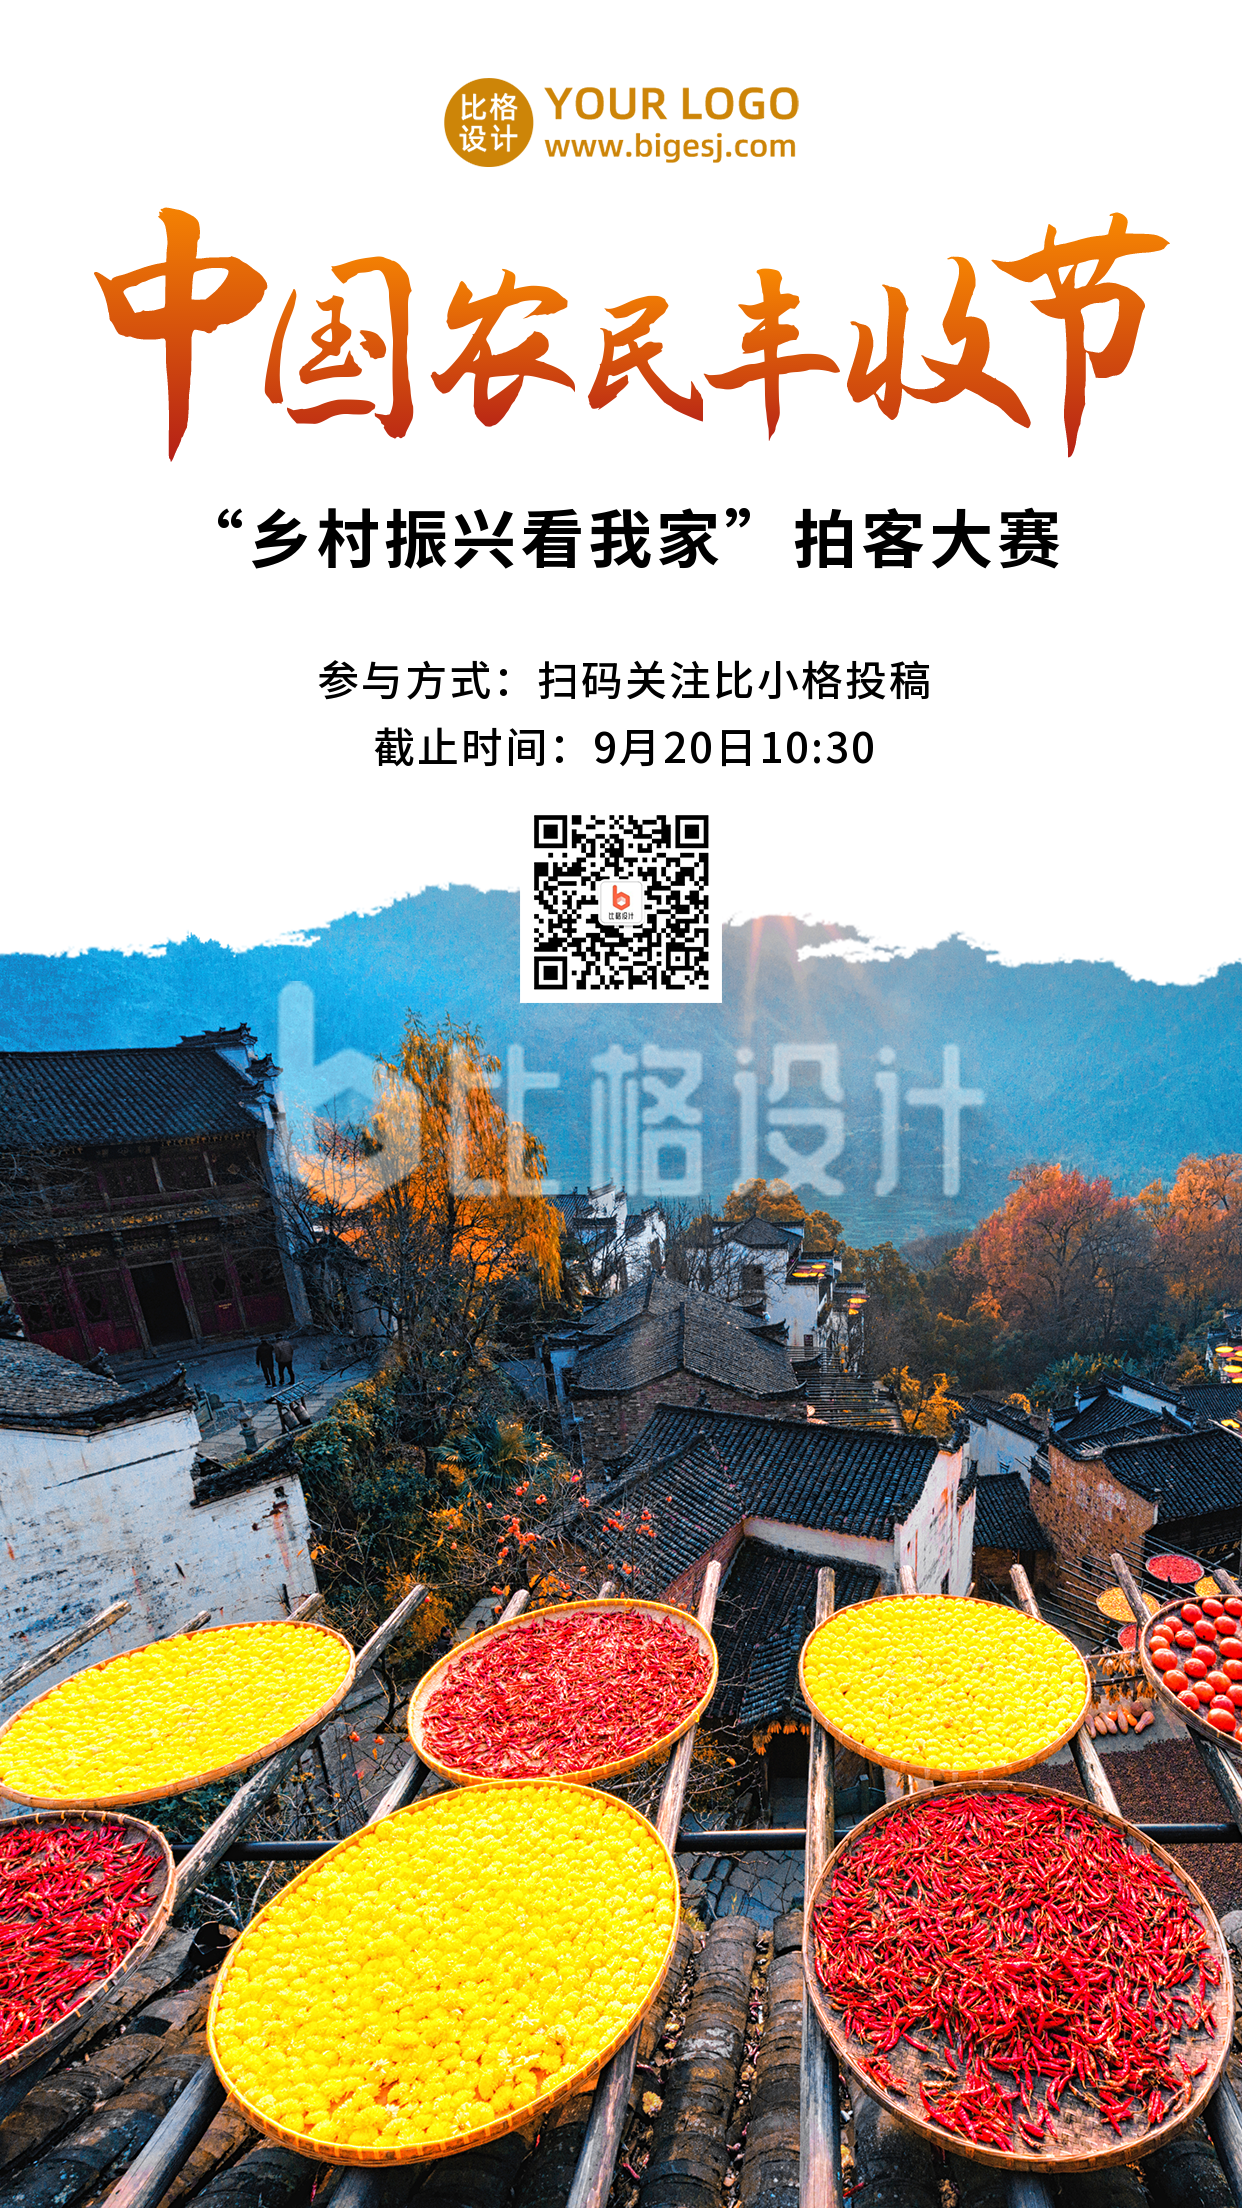 中国农民丰收节秋收庆祝活动手机海报